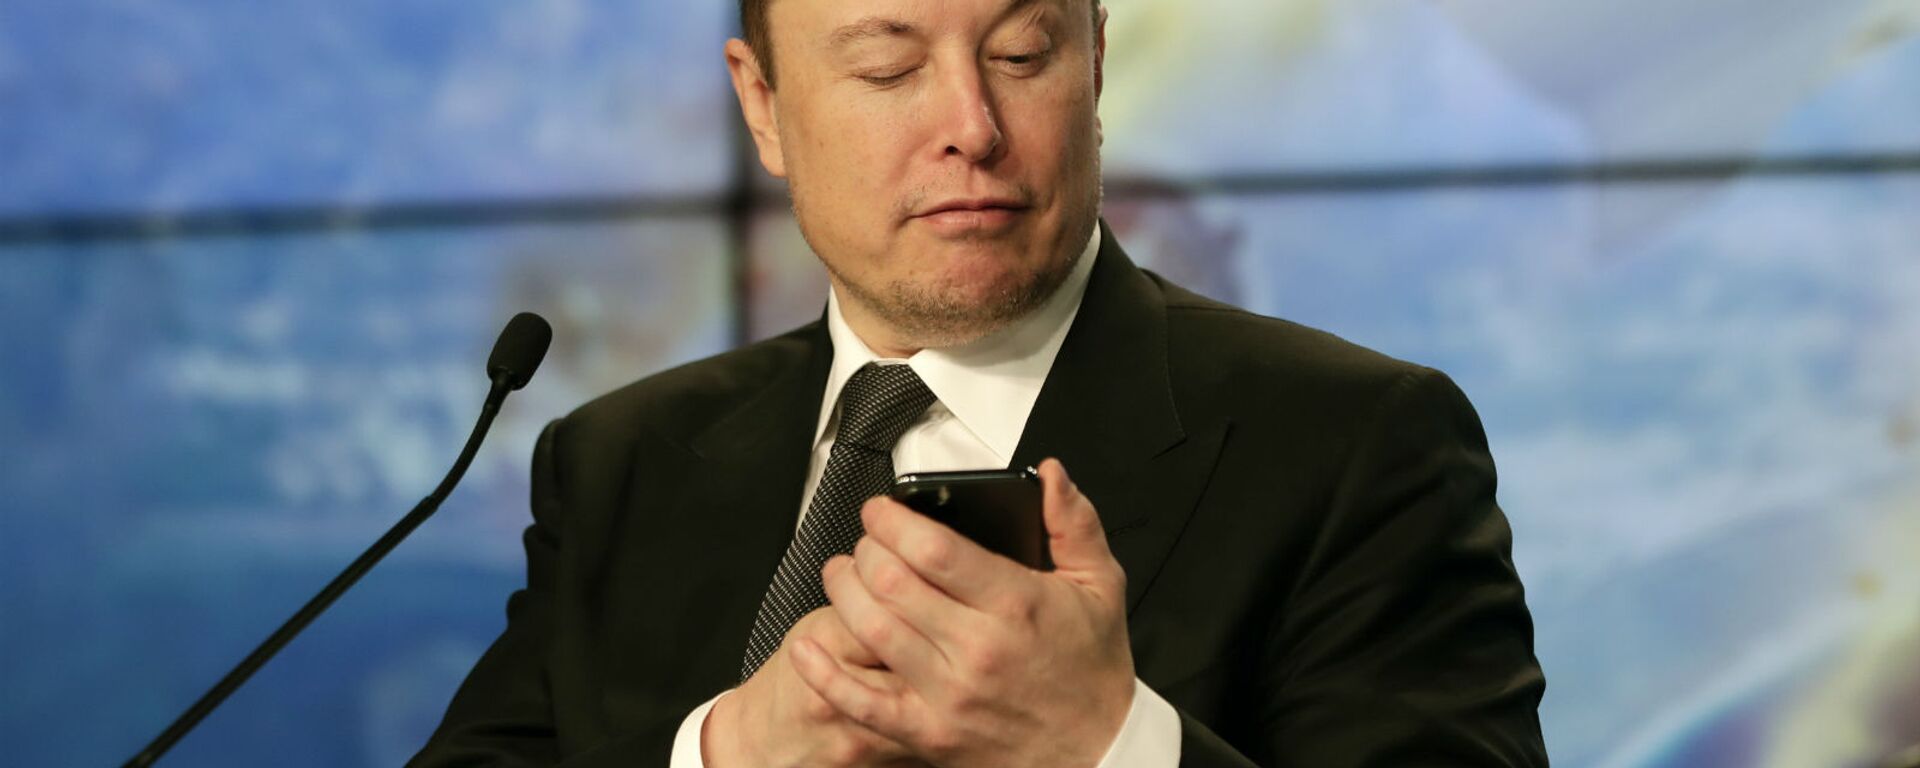 Основатель SpaceX Илон Маск шутит с журналистами, делая вид, что ищет ответ на вопрос по мобильному телефону во время пресс-конференции после испытательного полета ракеты Falcon 9 SpaceX (19 января 2020). Флорида - Sputnik Армения, 1920, 24.03.2021